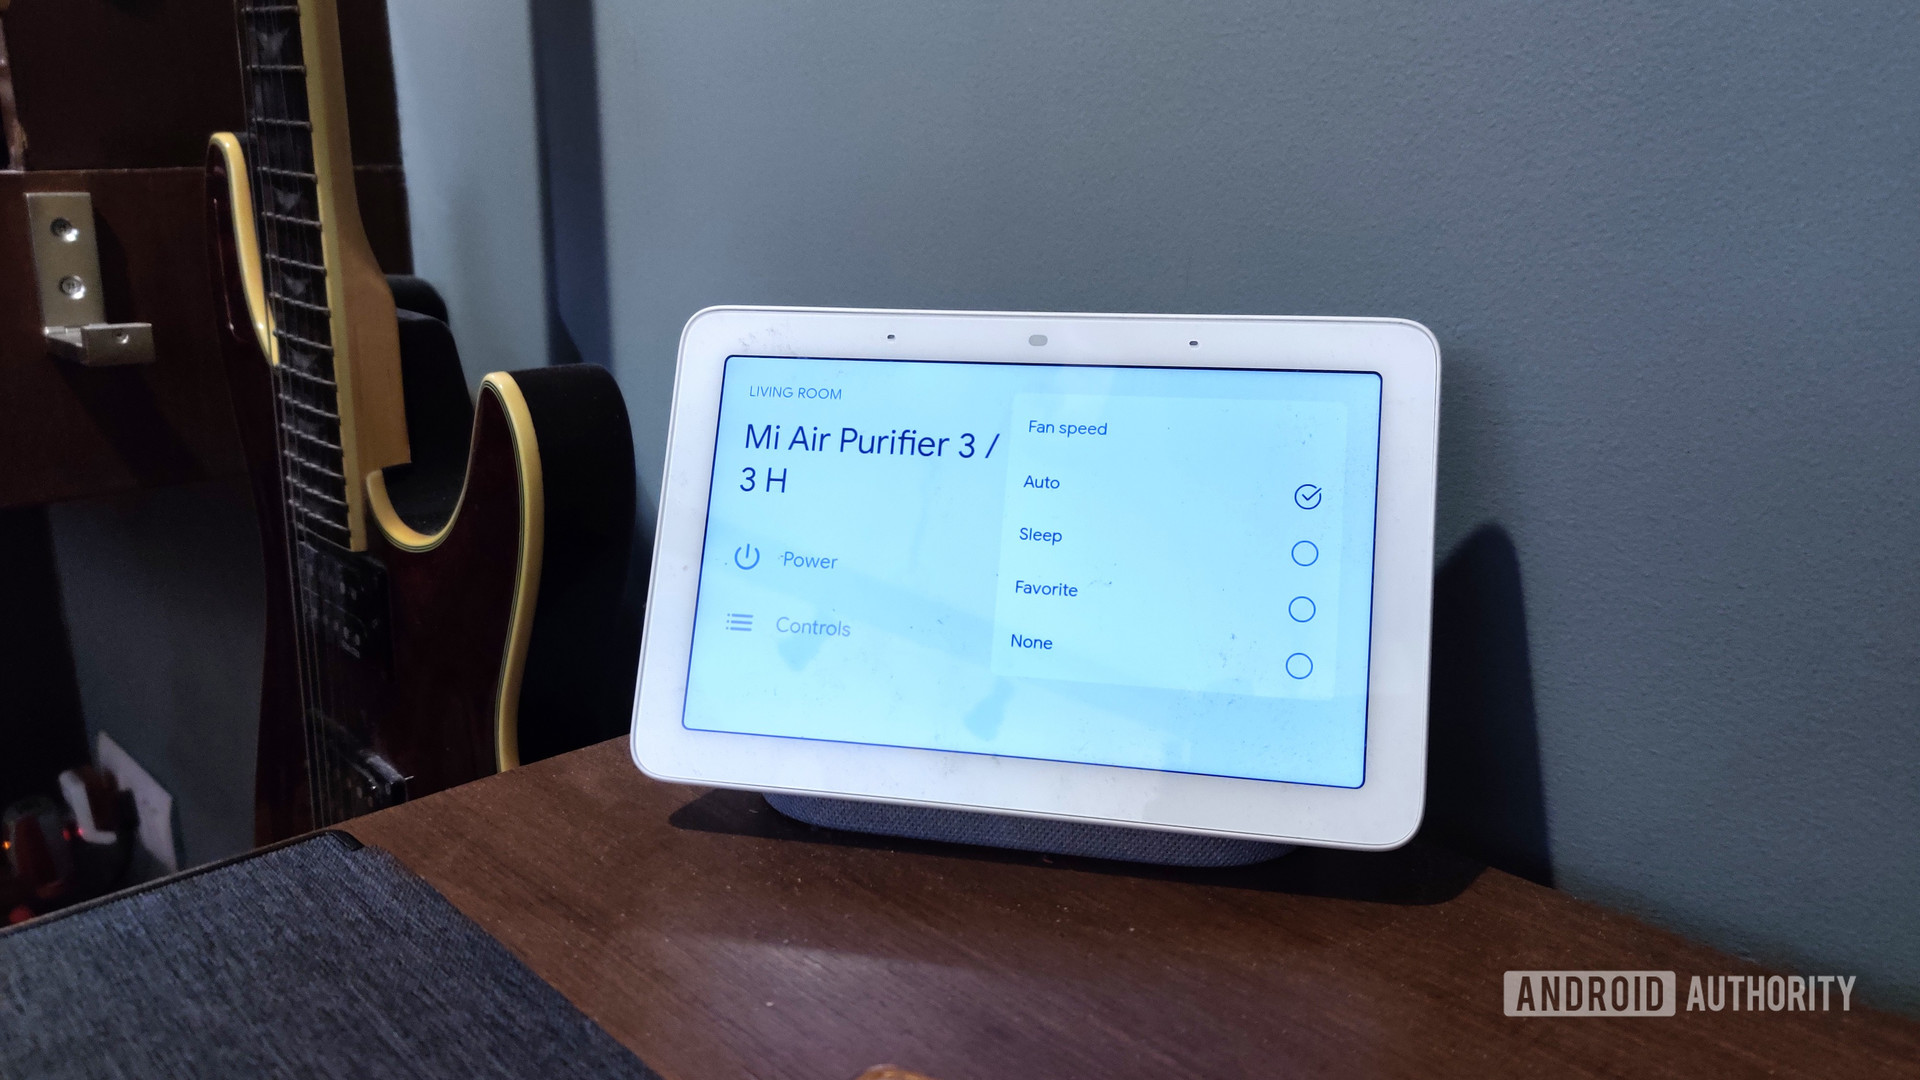 Mi Air Purifier 3 google home integration